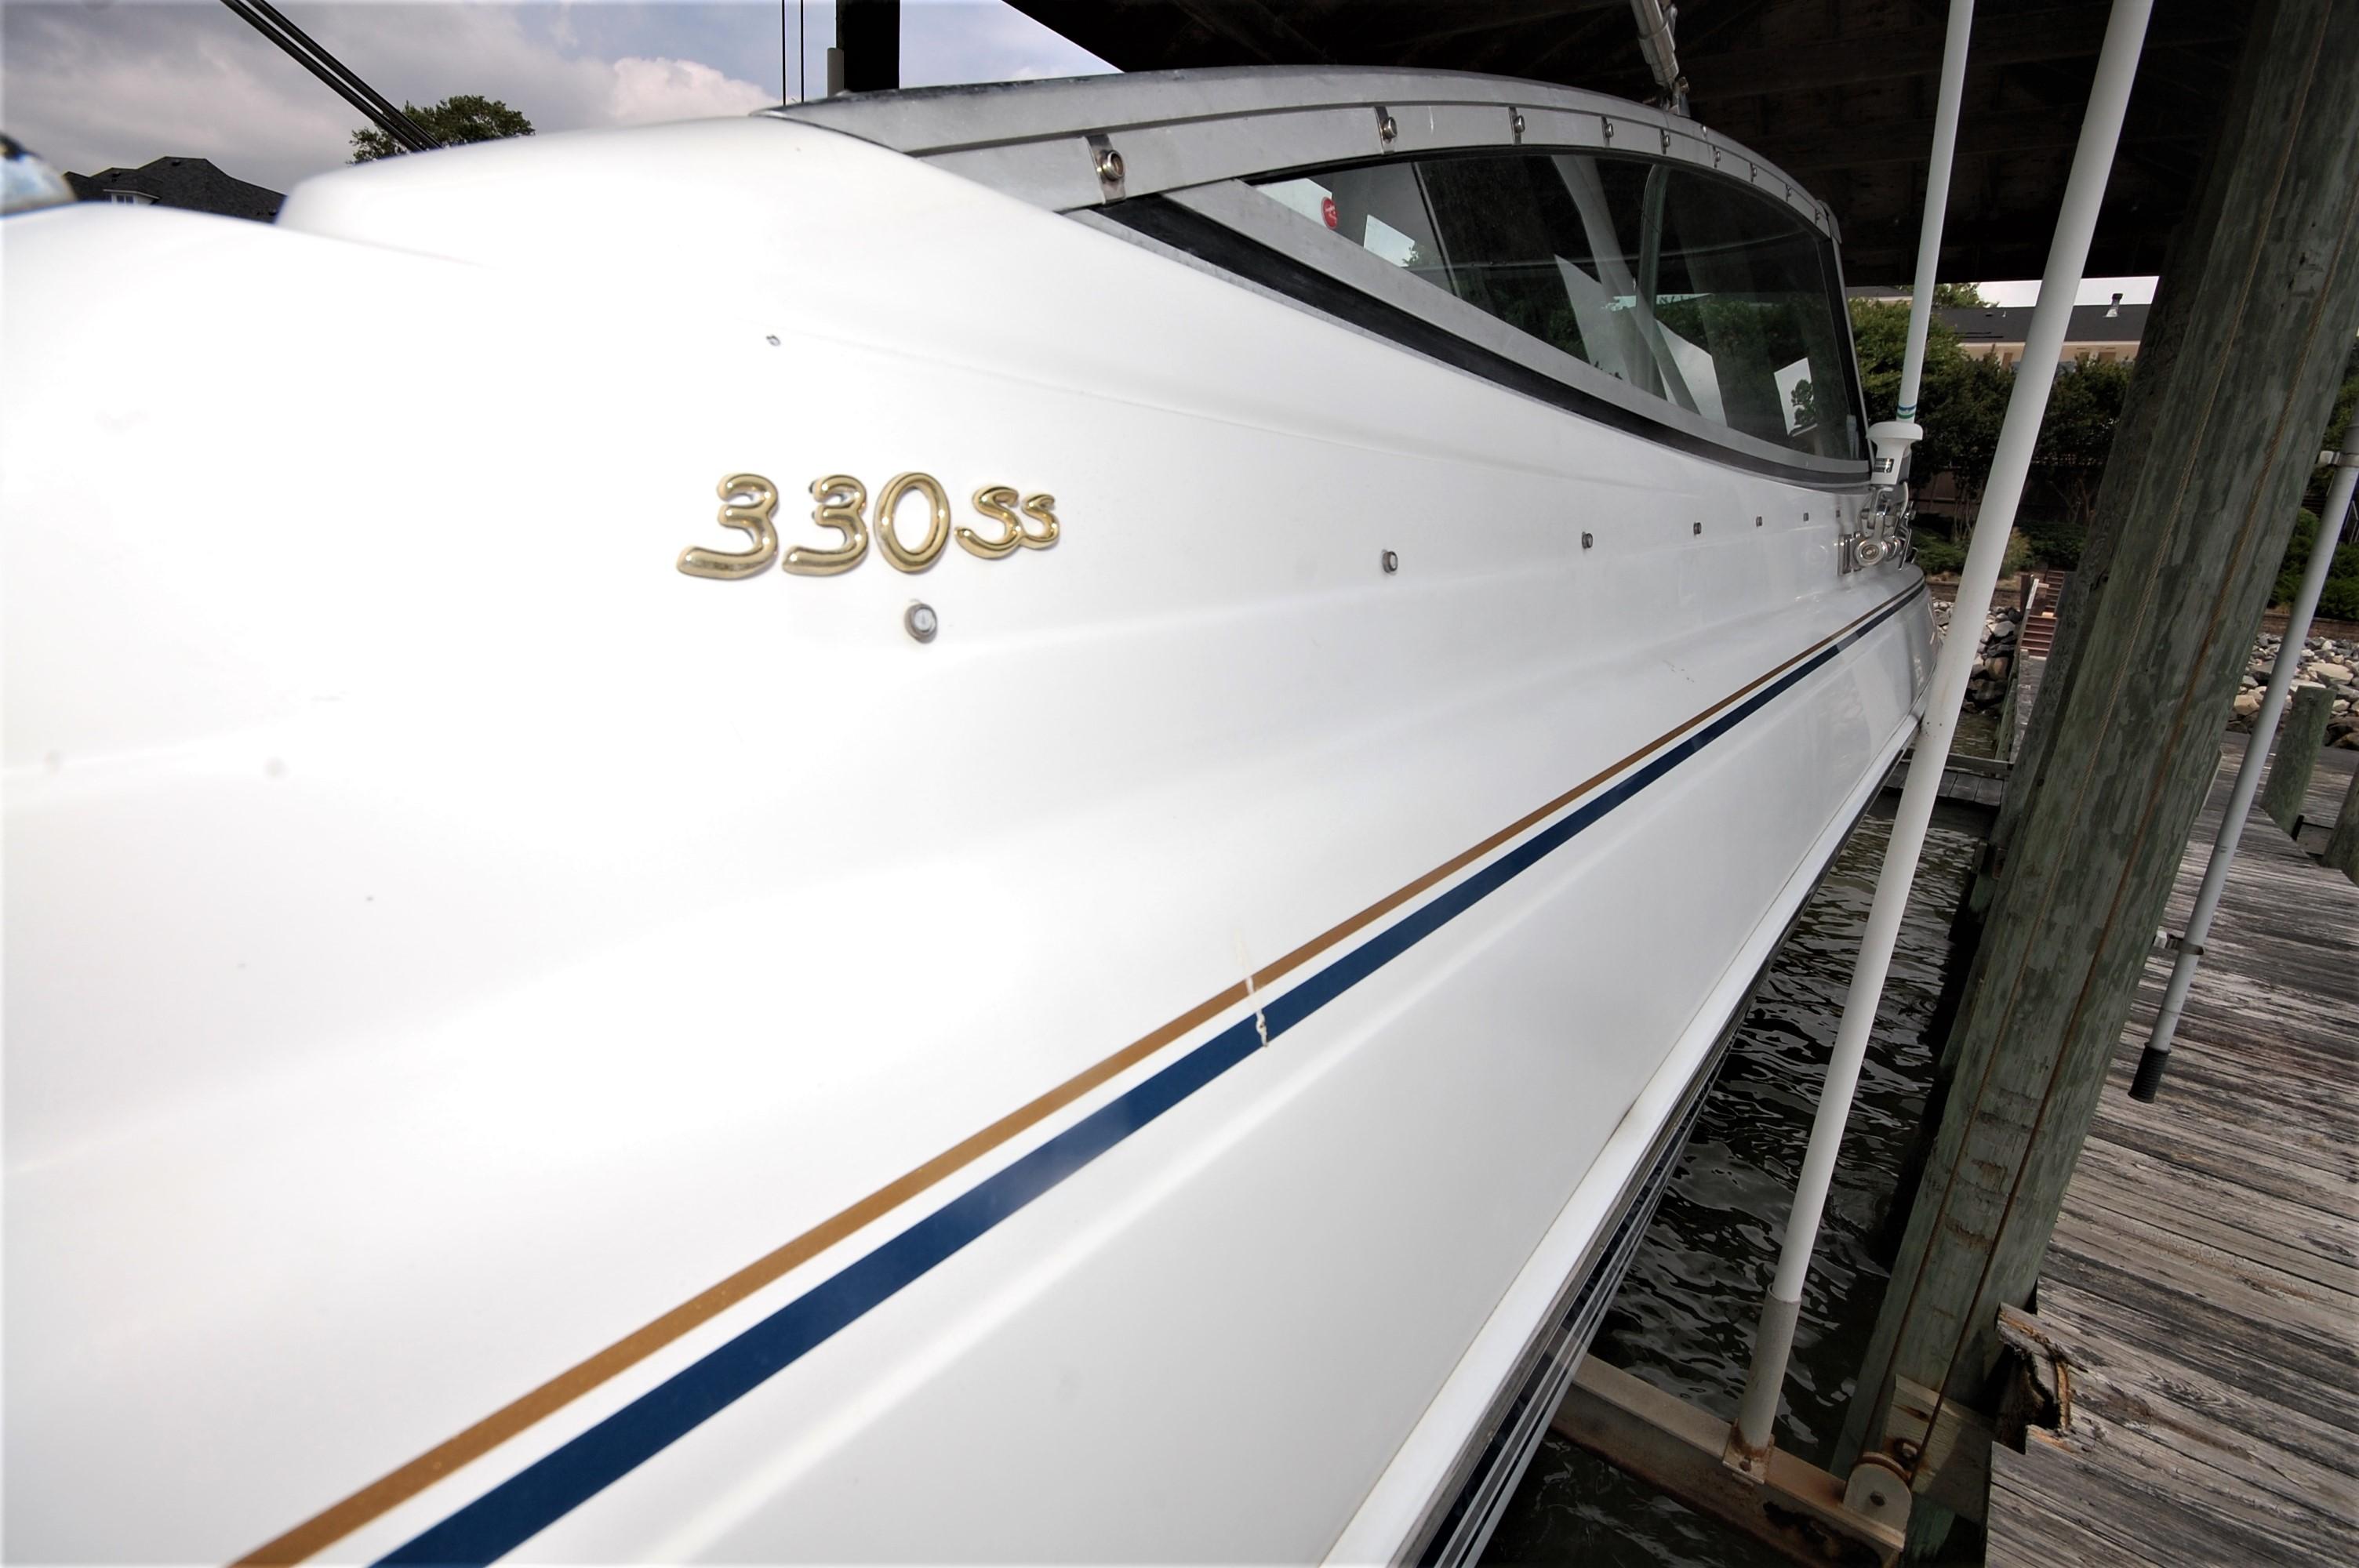 V 7070 SS Knot 10 Yacht Sales